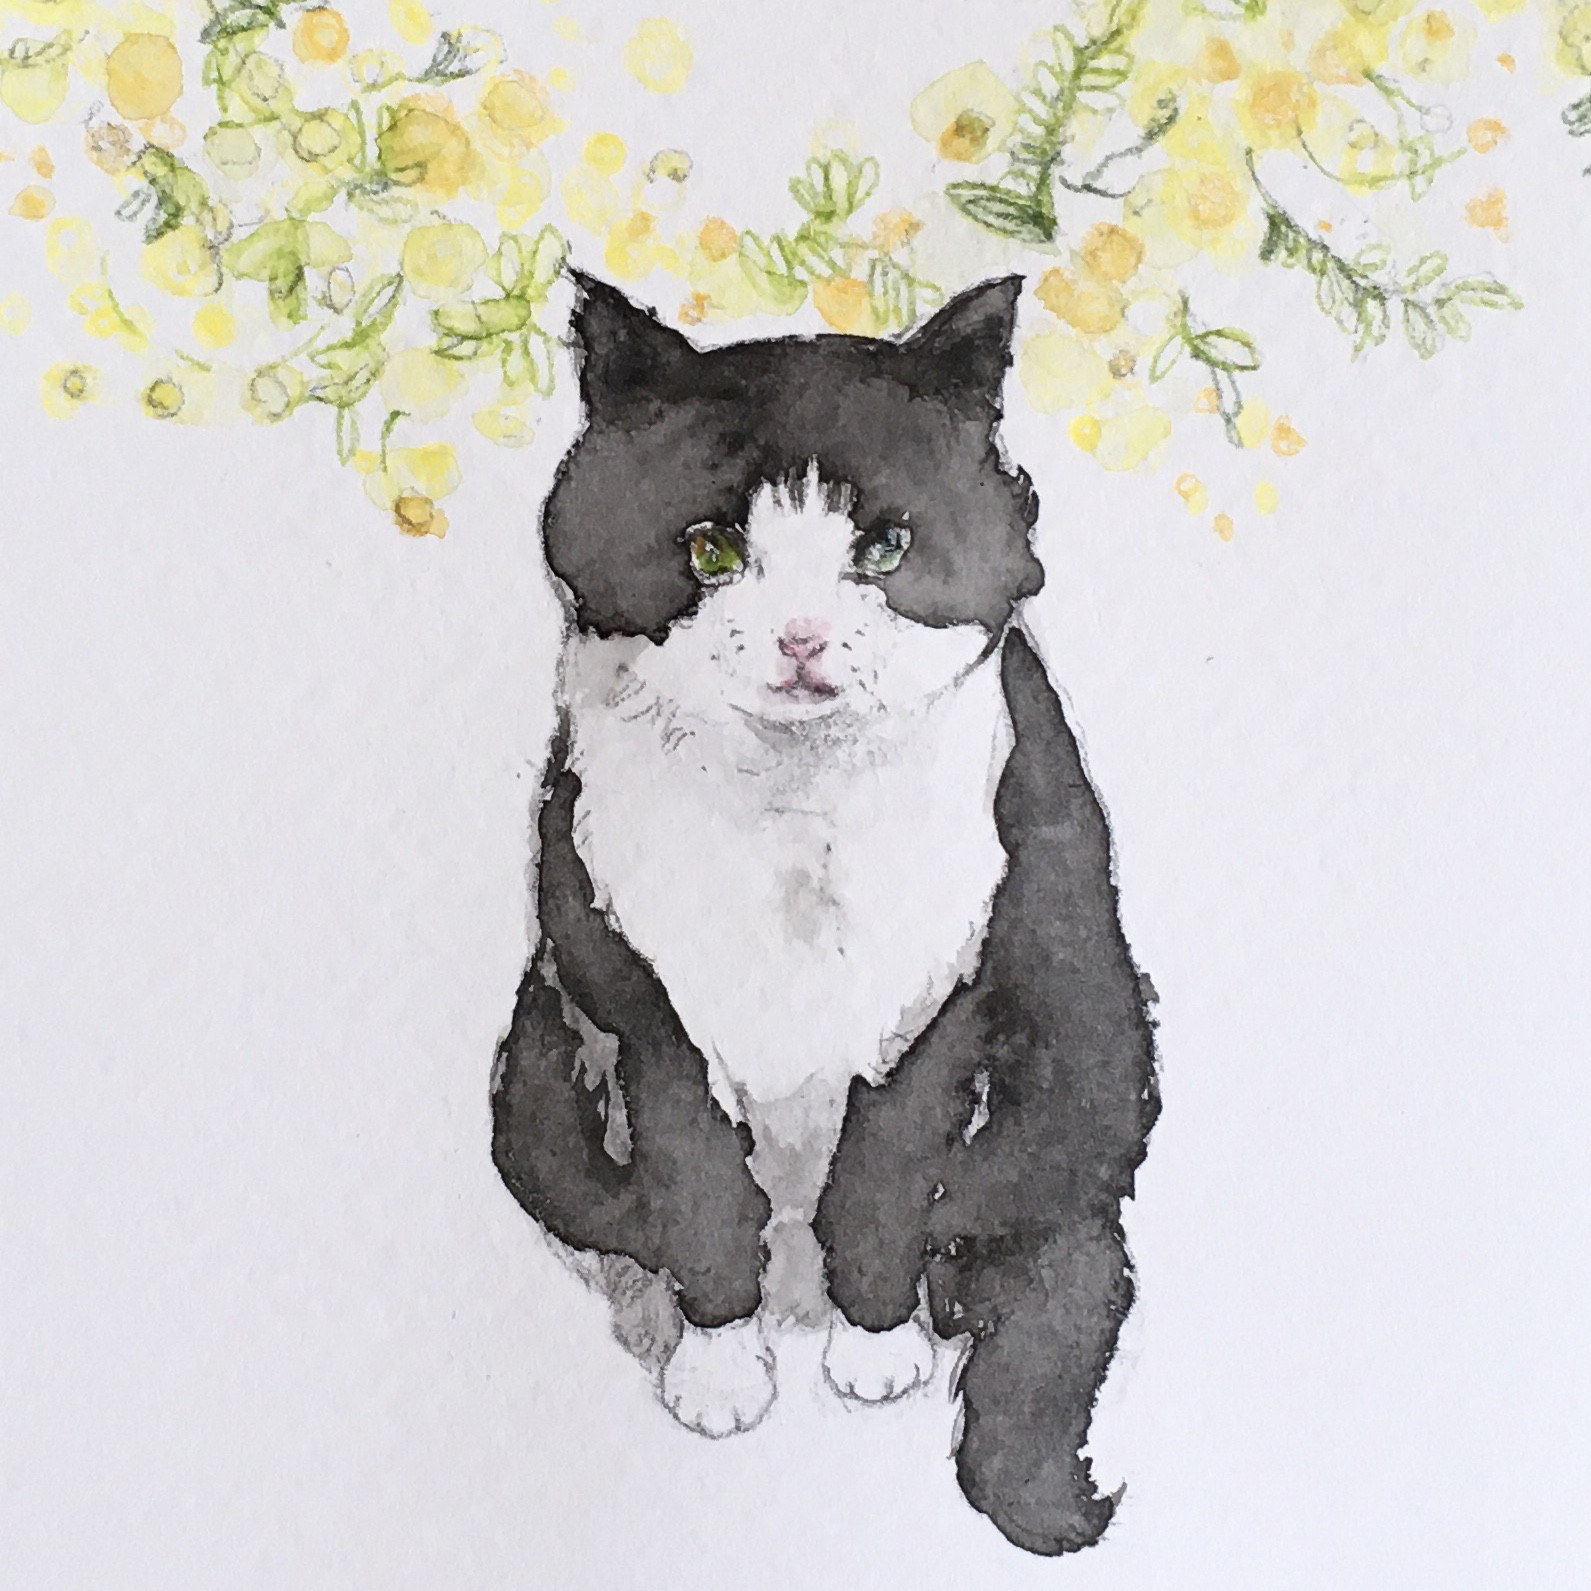 【水彩画】『ミモザと春を待つ猫』【原画】 イラスト KAZE_MACHI 